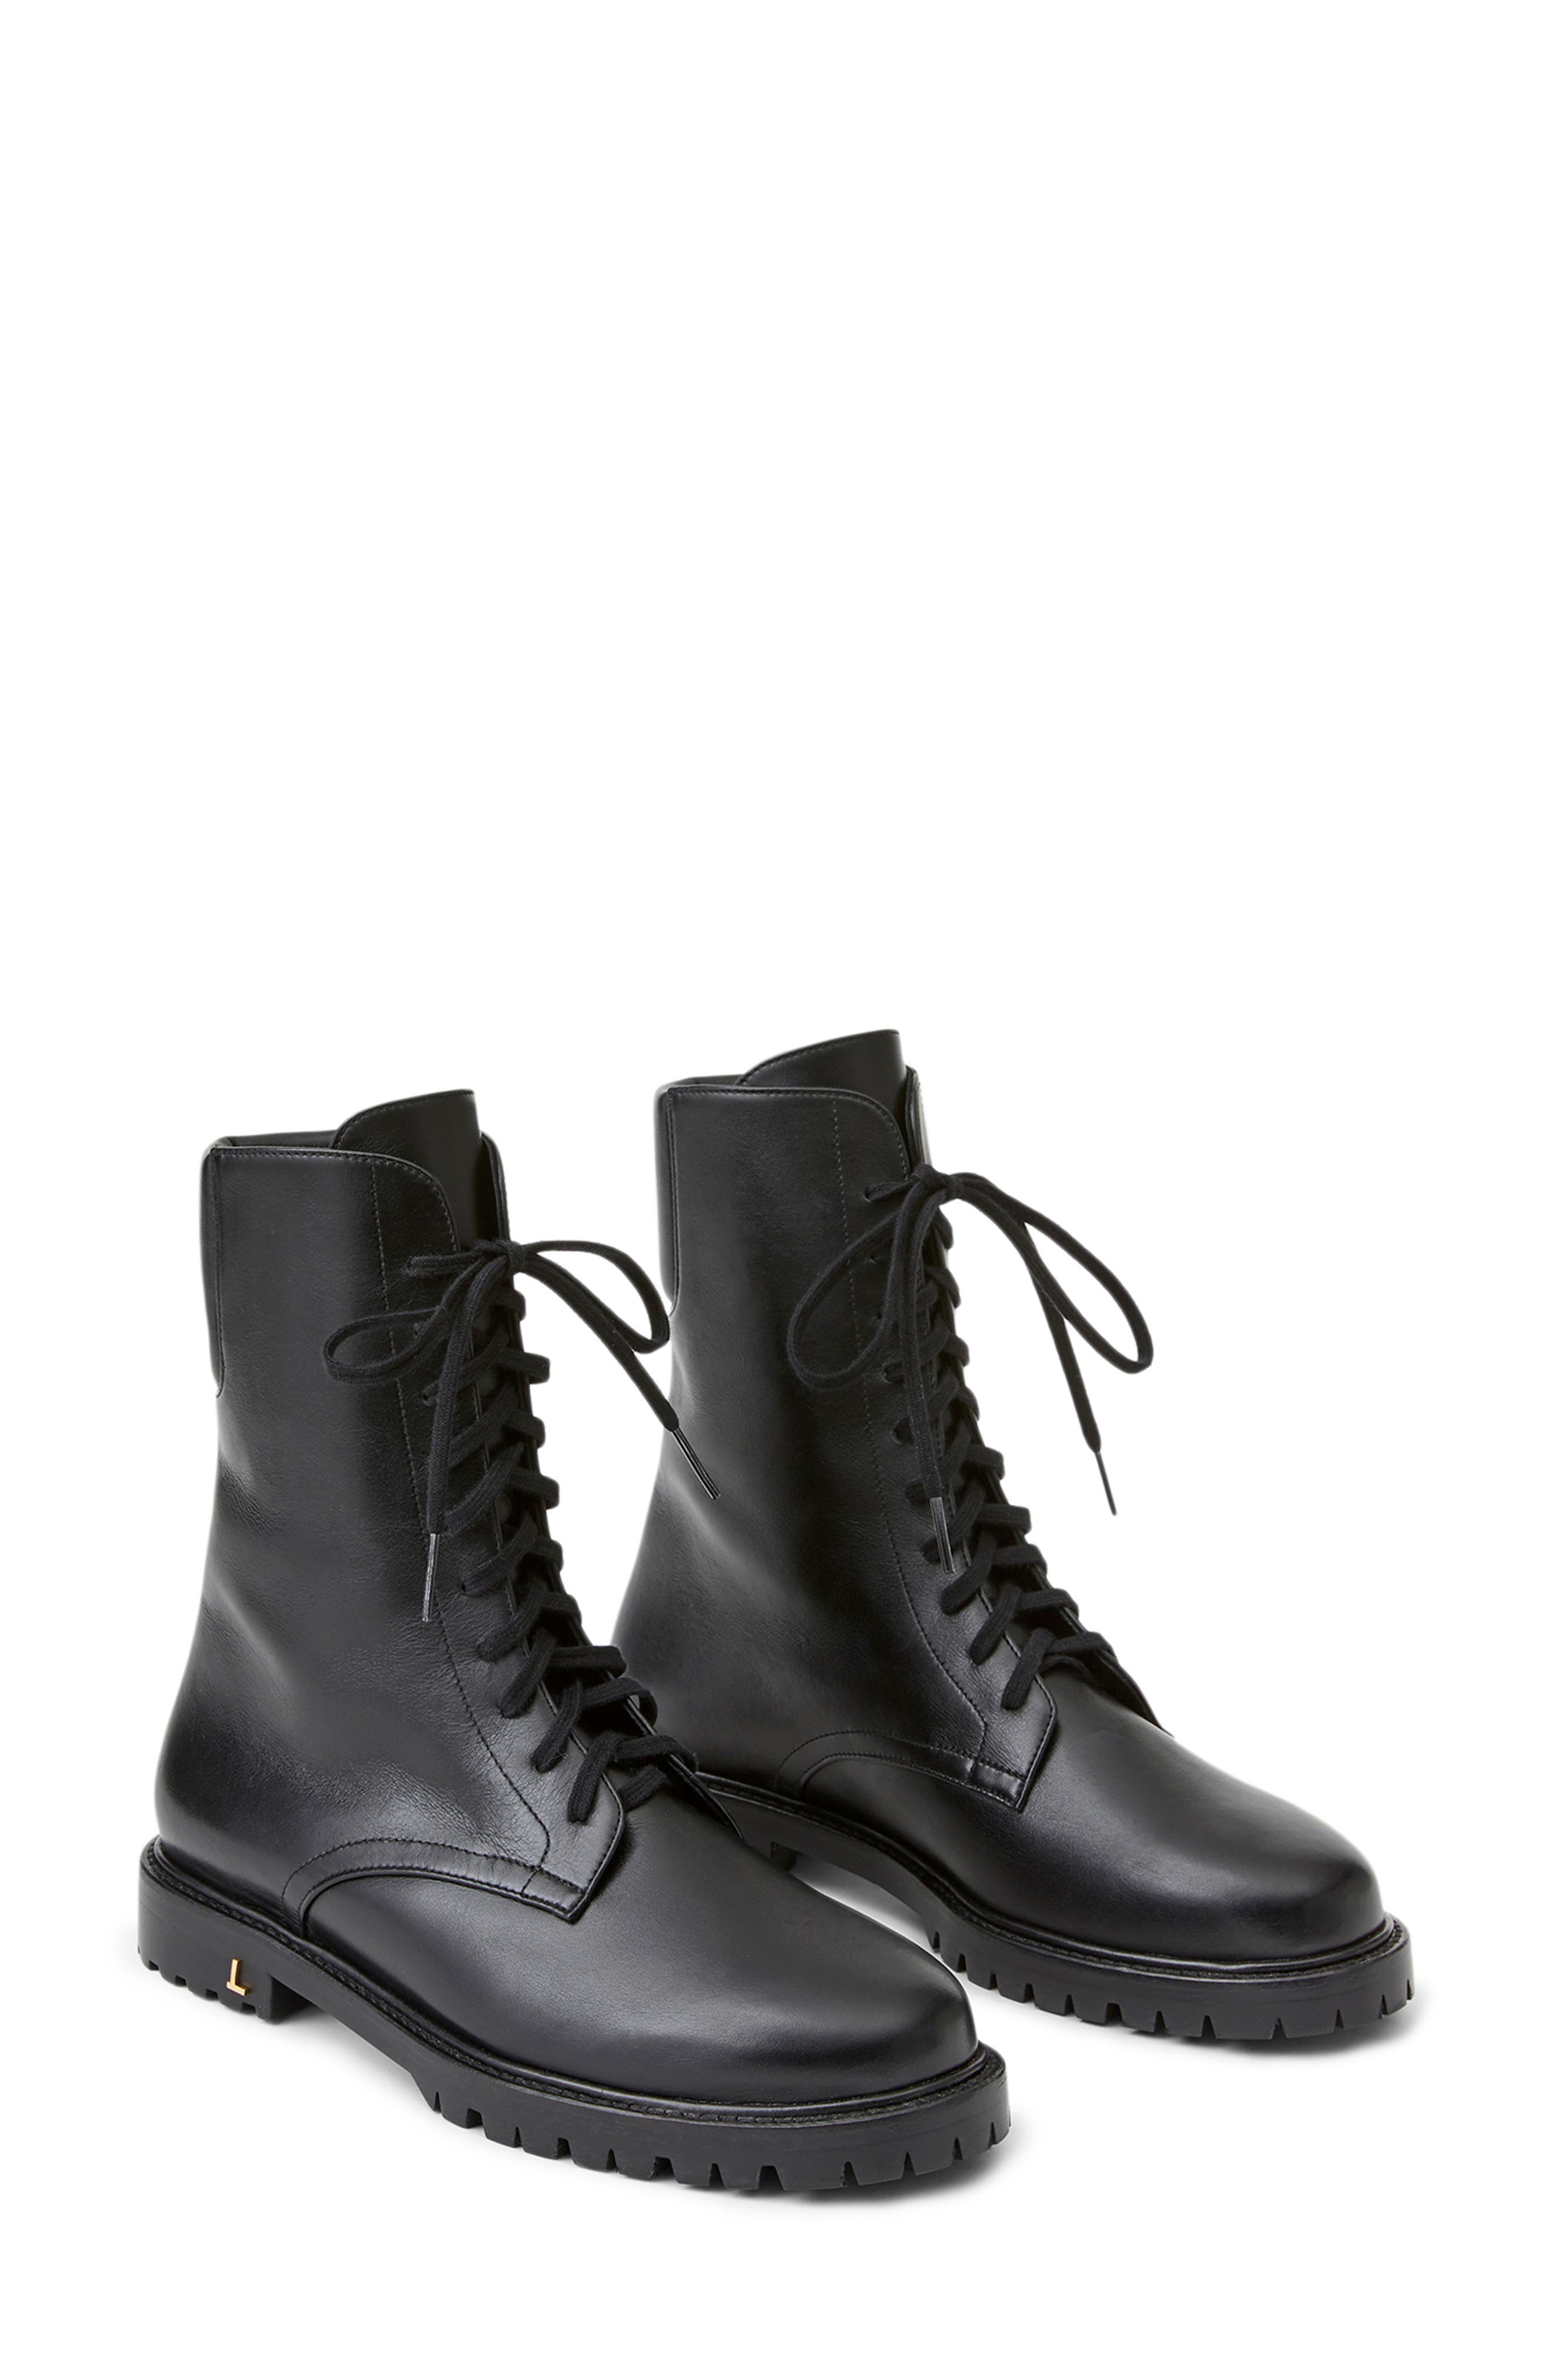 designer combat boots